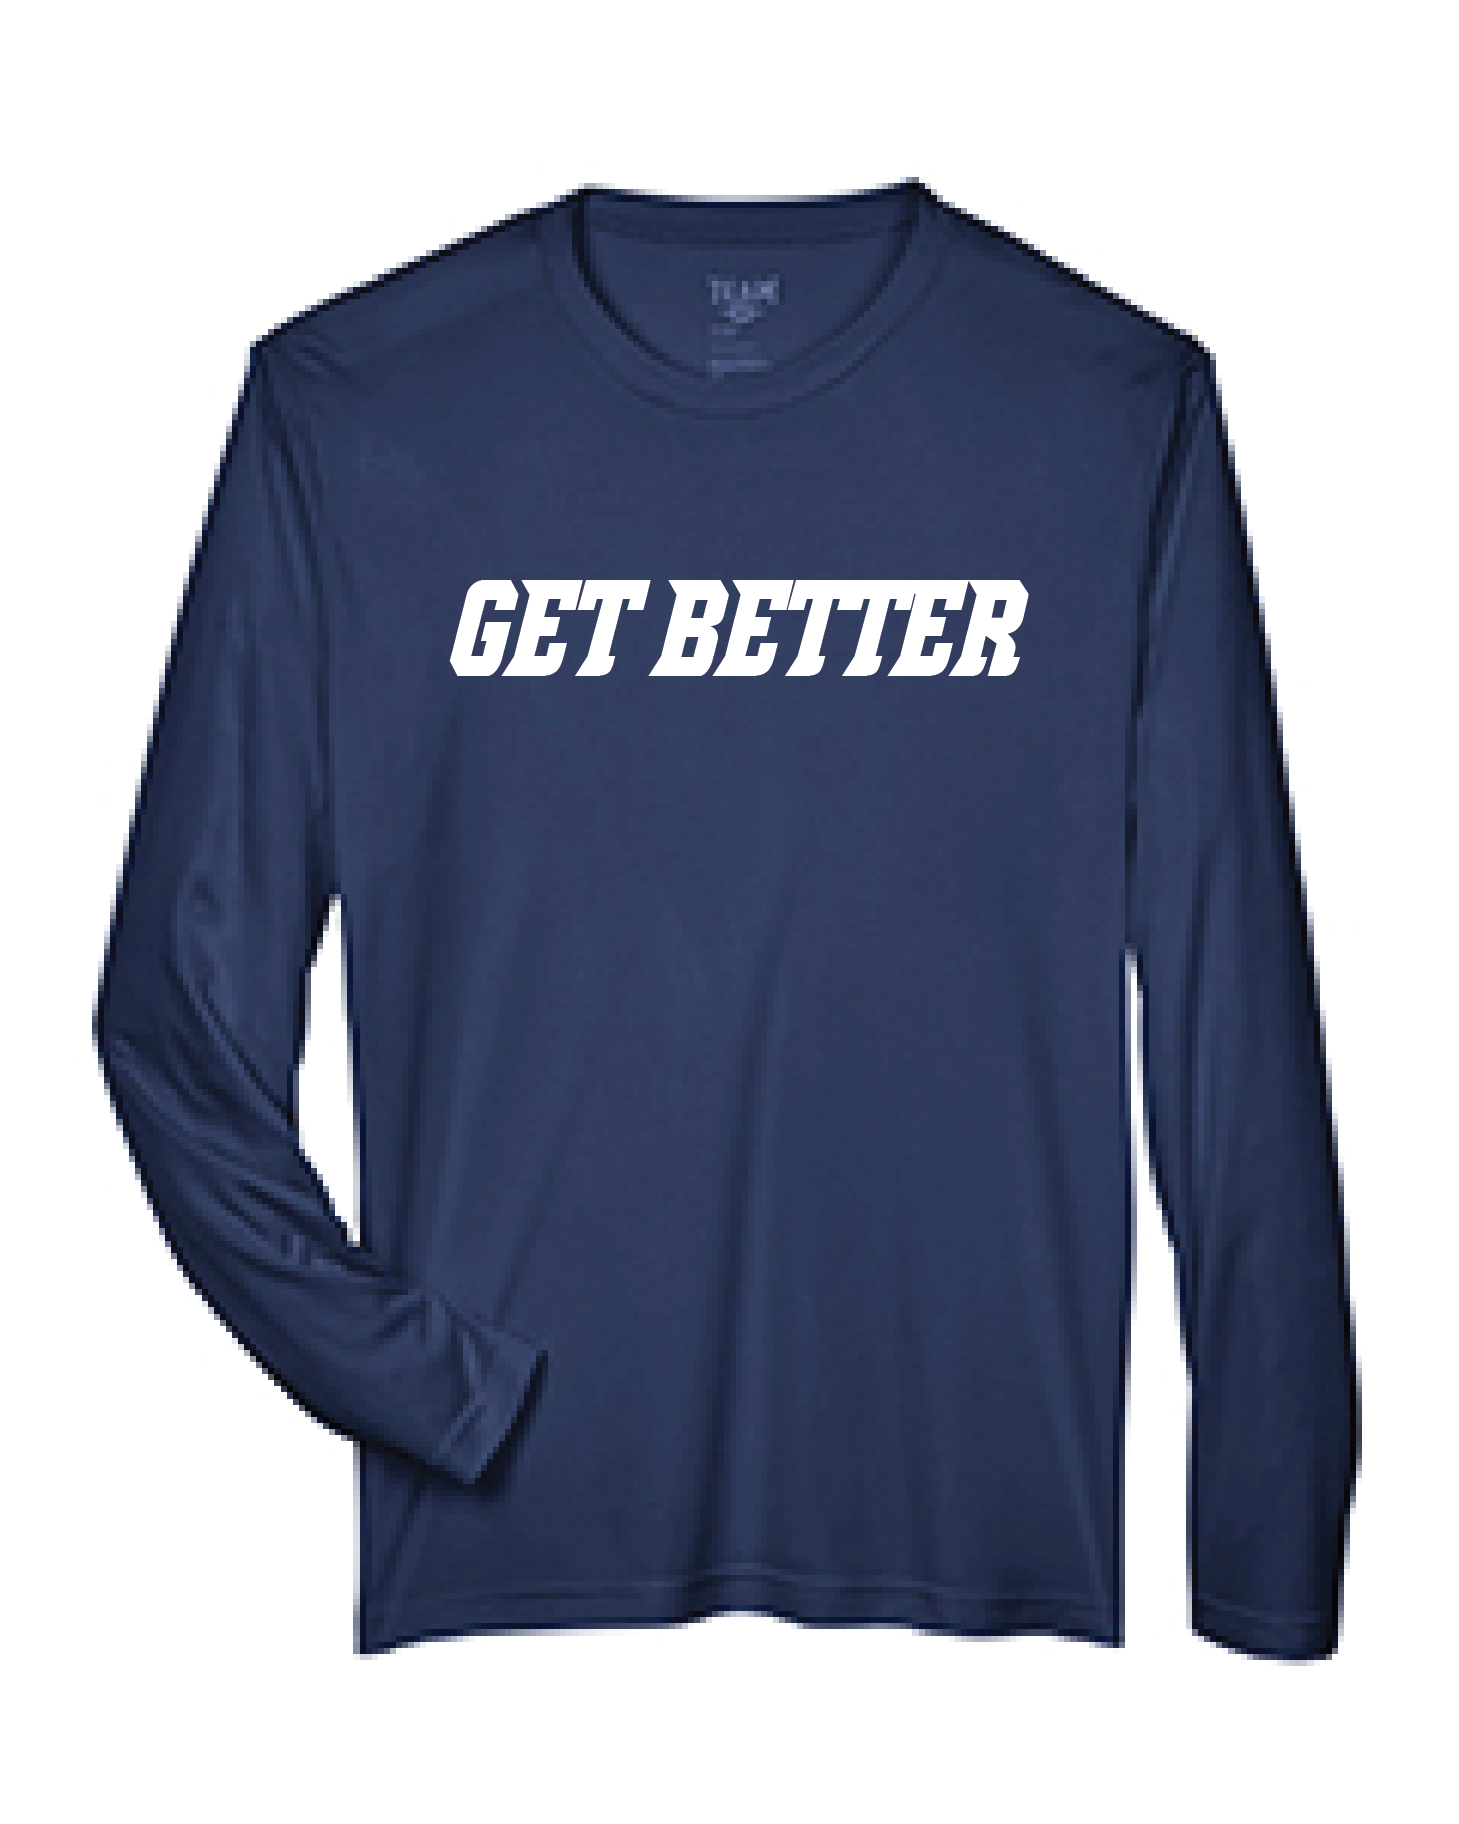 Get Better Crewneck Sweatshirt